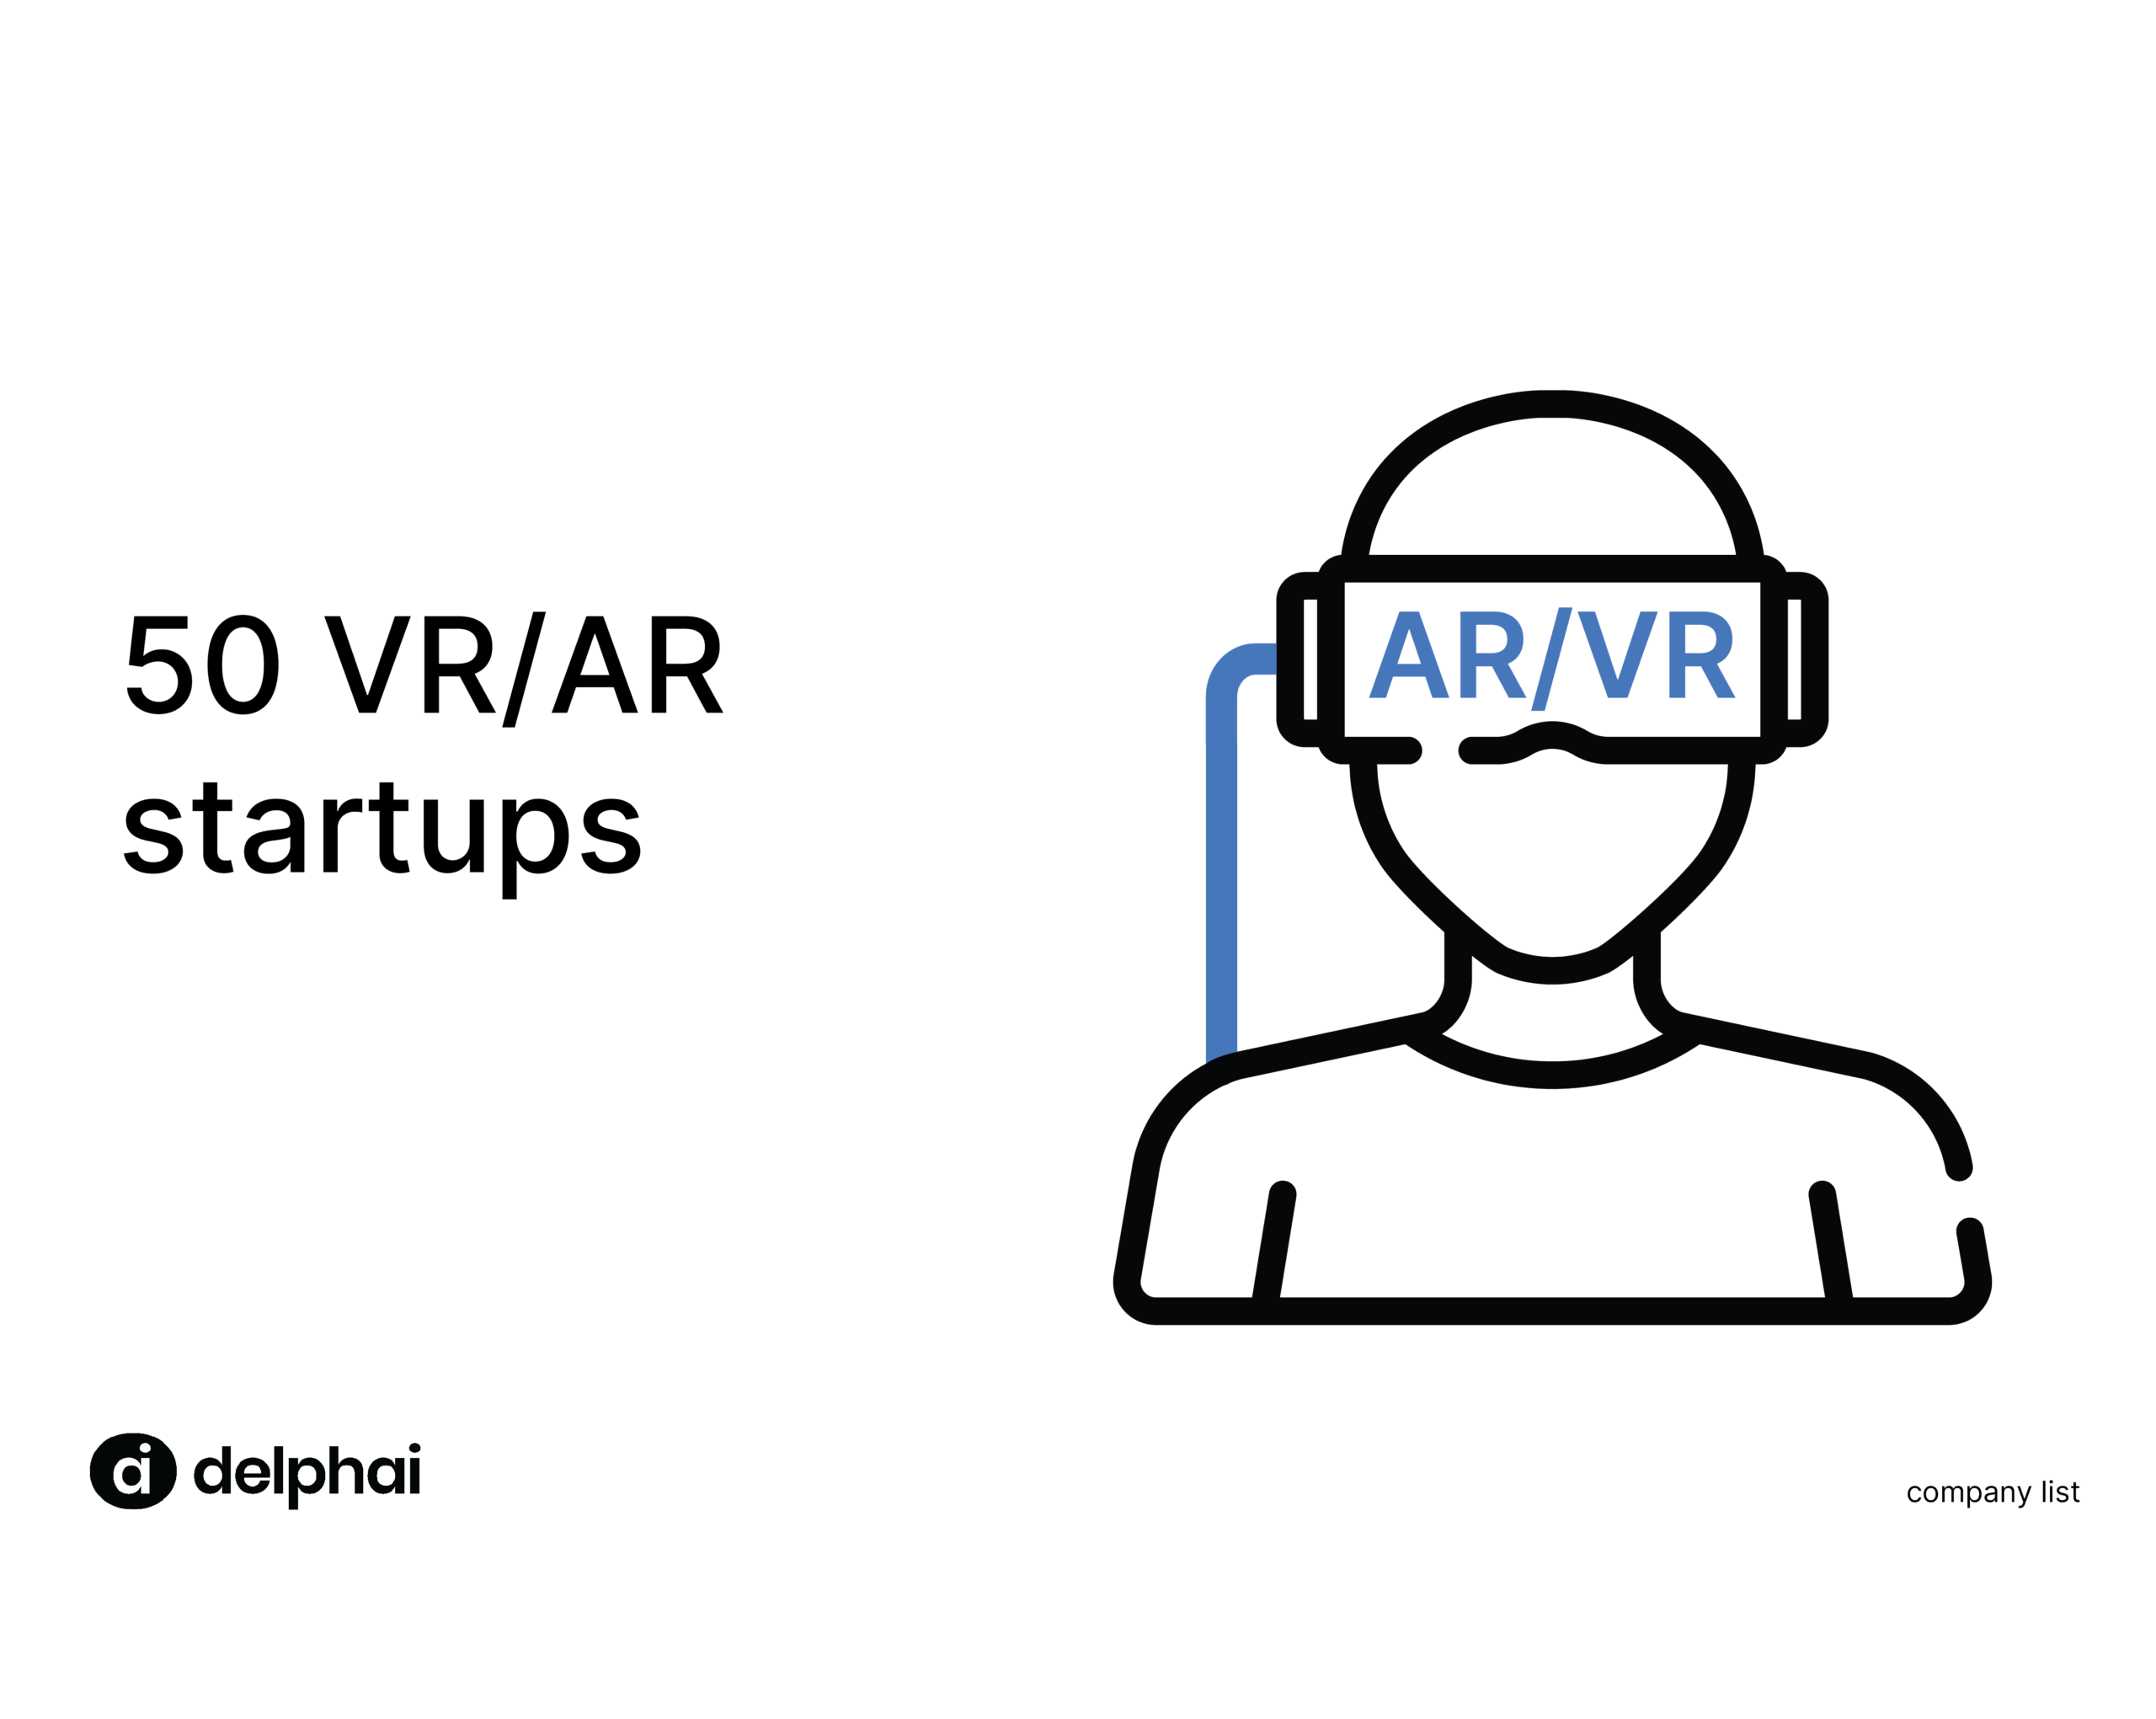 VR/AR startups